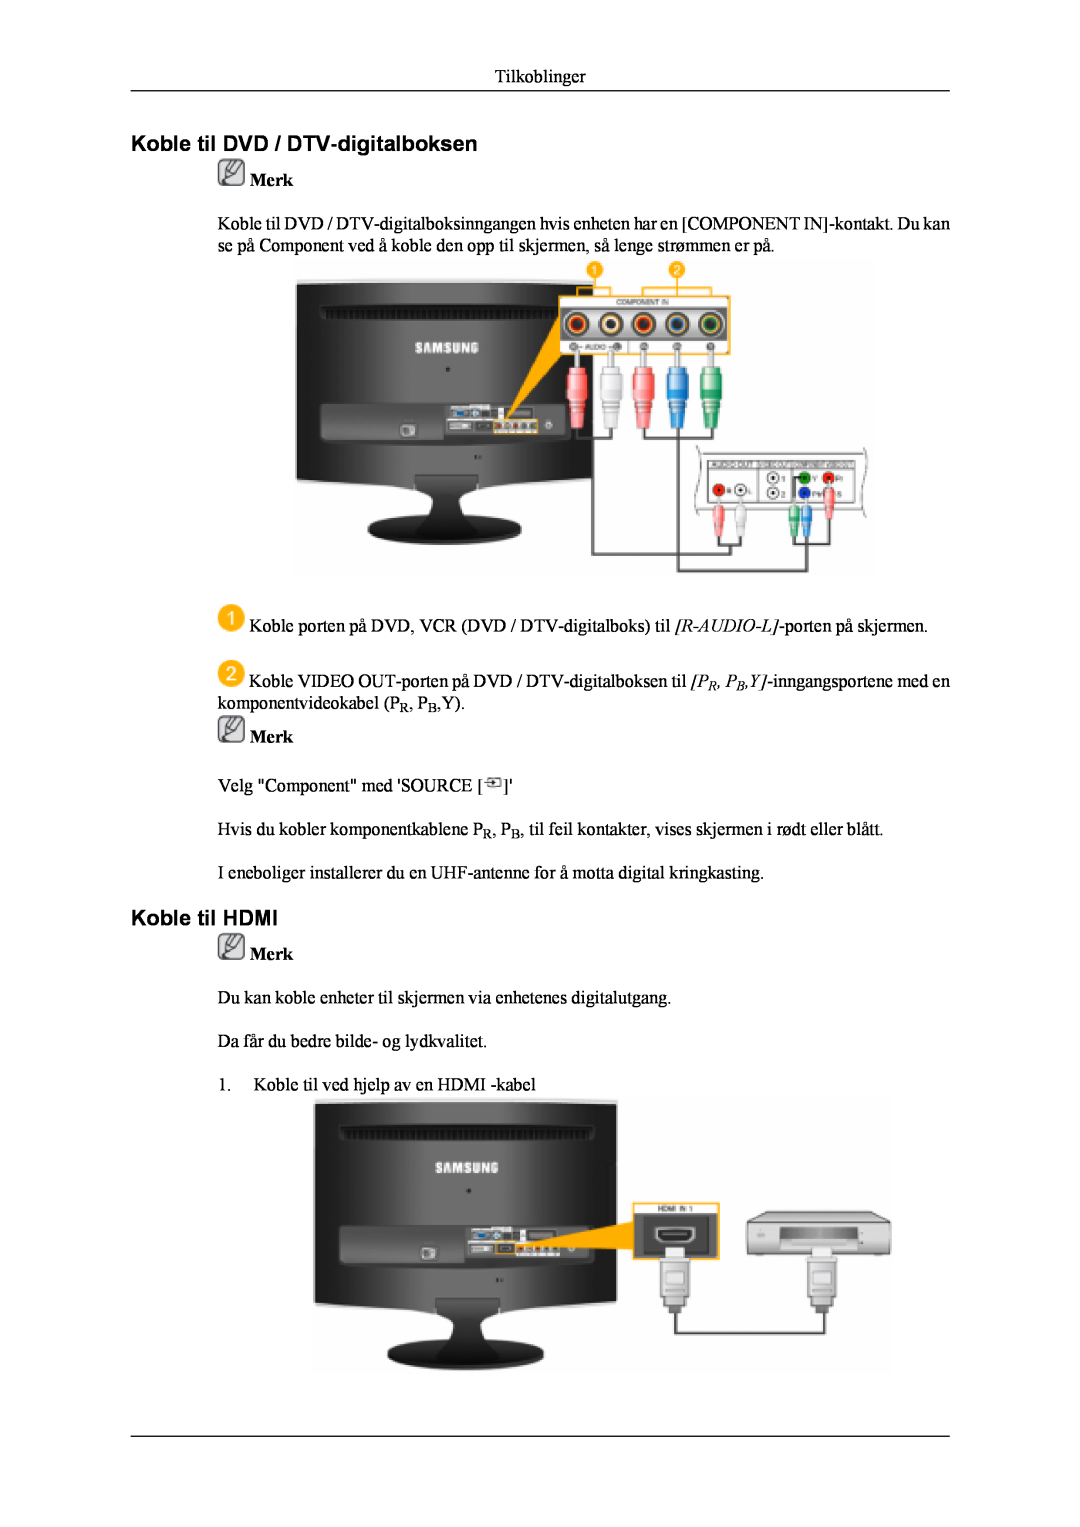 Samsung LS20TDVSU/XE, LS20TDVSUV/EN, LS22TDVSUV/EN, LS20TDDSUV/EN Koble til DVD / DTV-digitalboksen, Koble til HDMI, Merk 